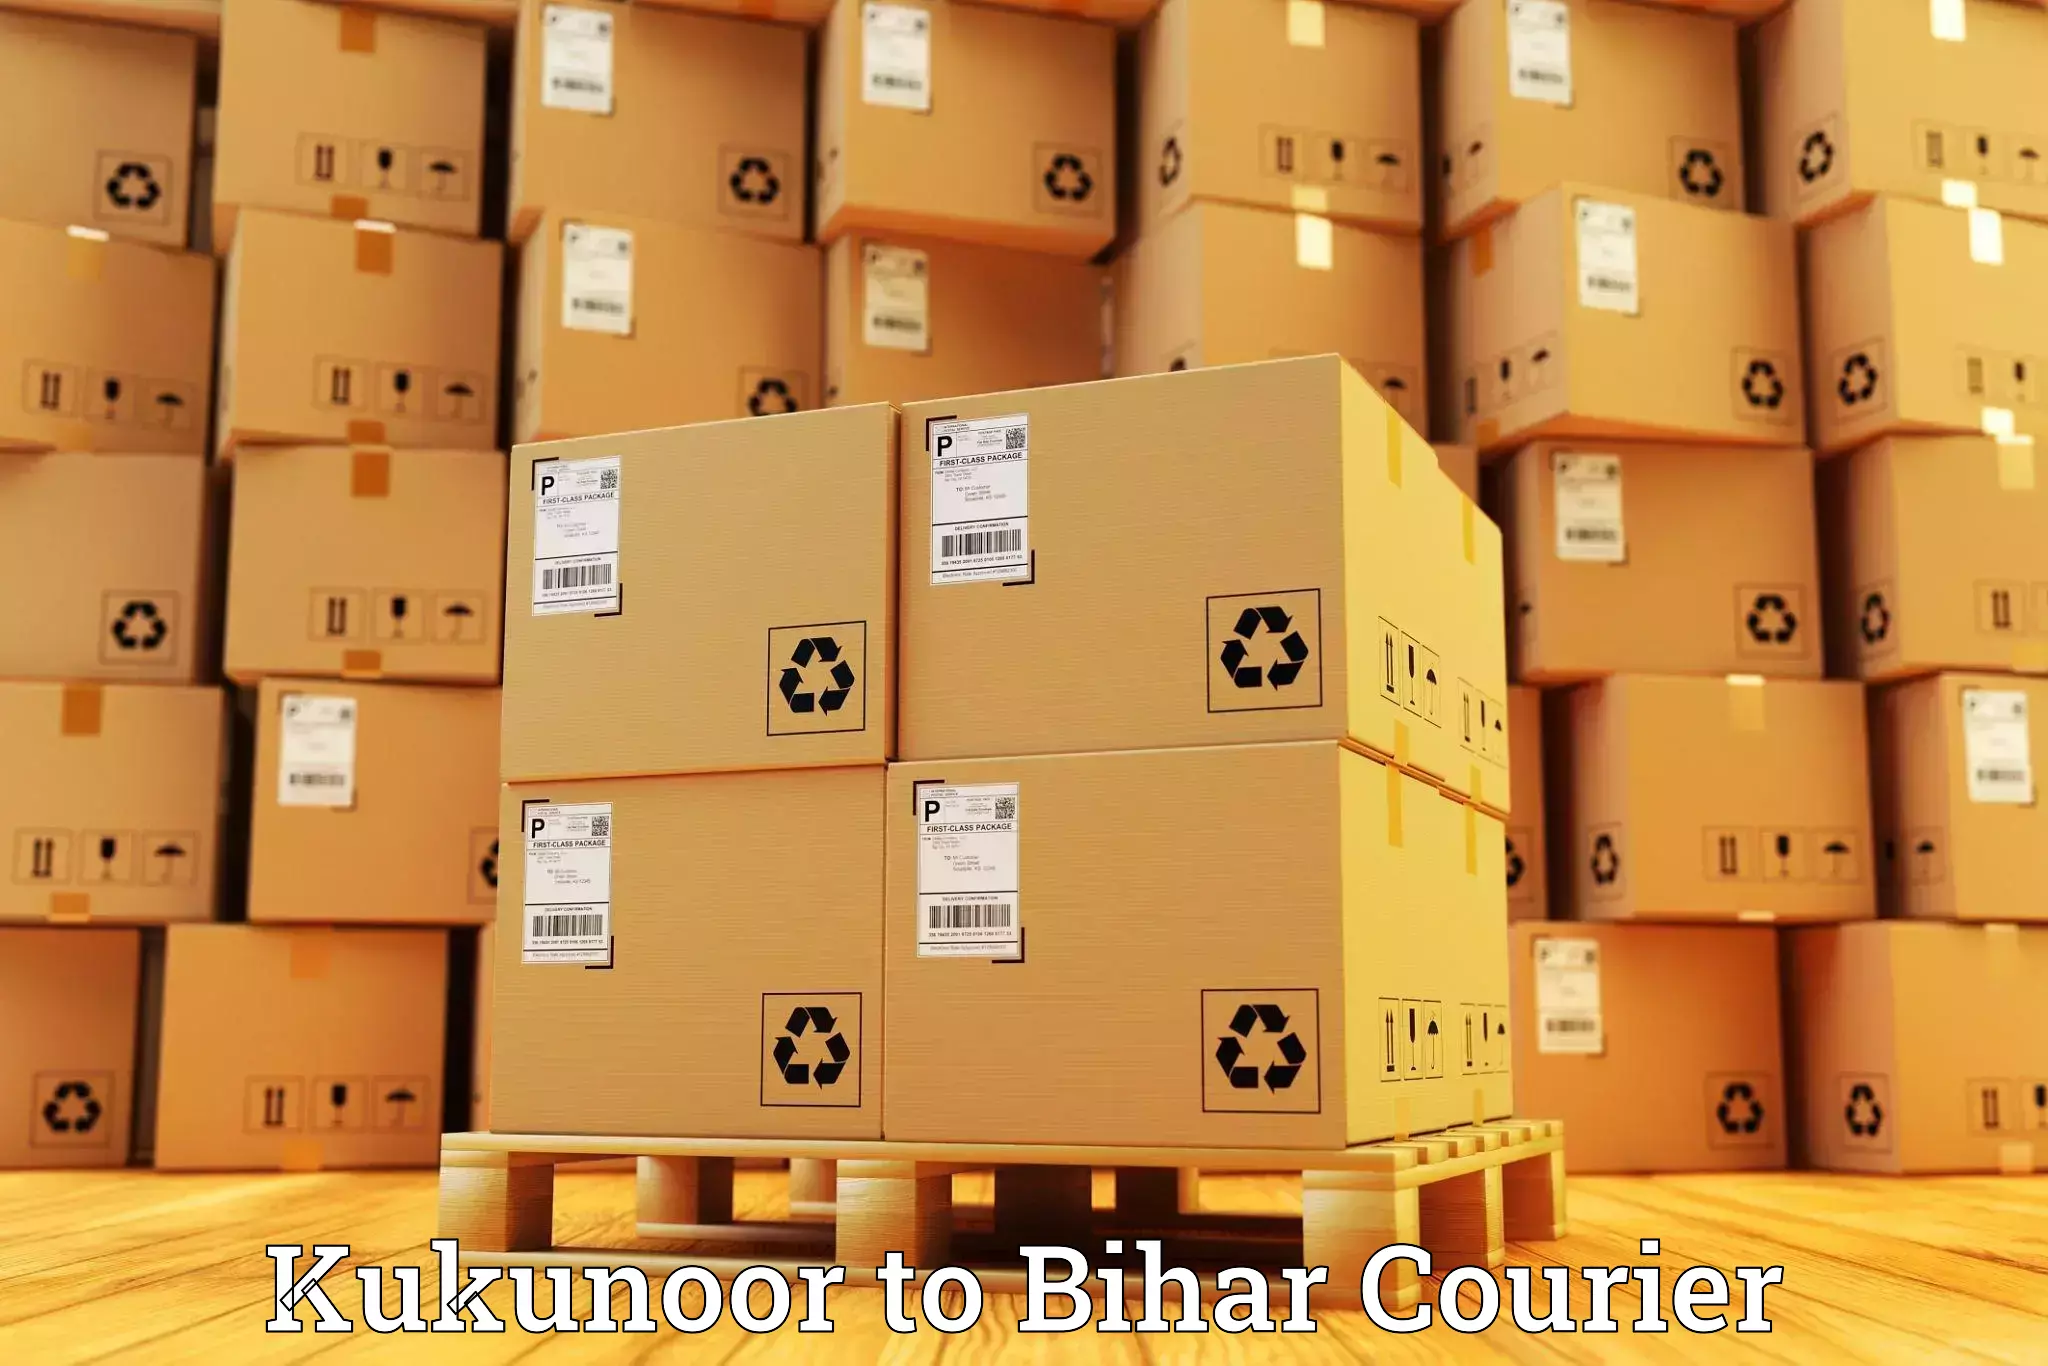 24/7 courier service Kukunoor to Aurangabad Bihar